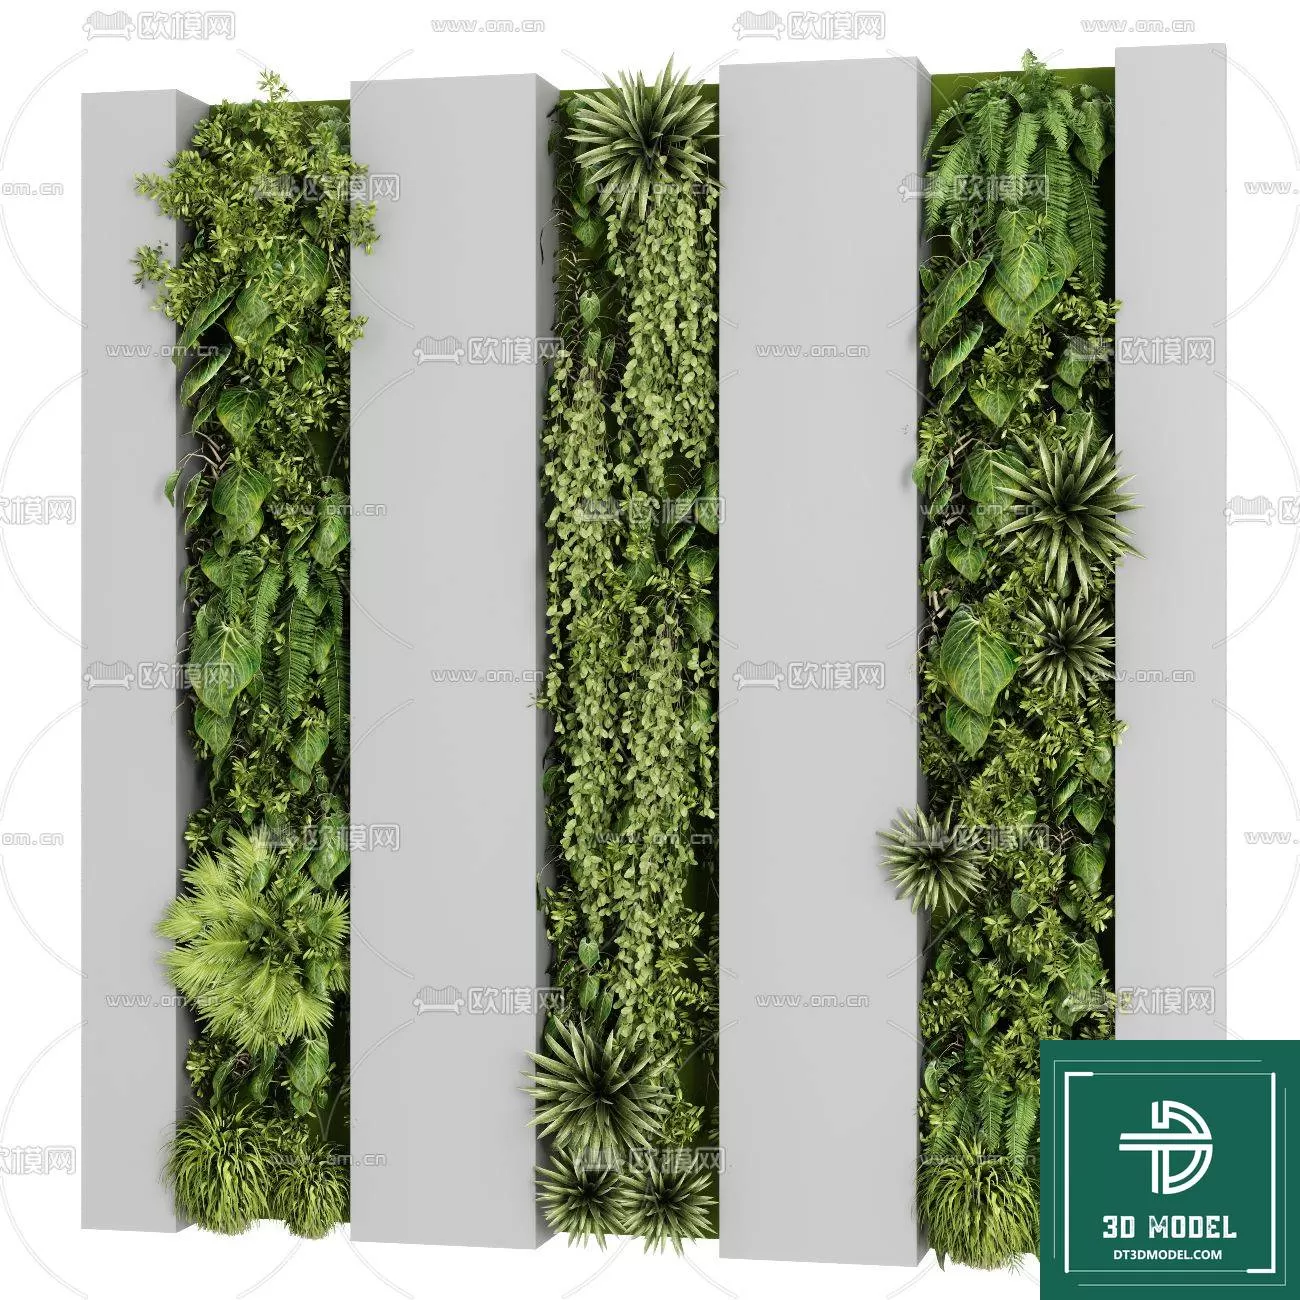 VERTICAL GARDEN – FITOWALL PLANT 3D MODEL – 171